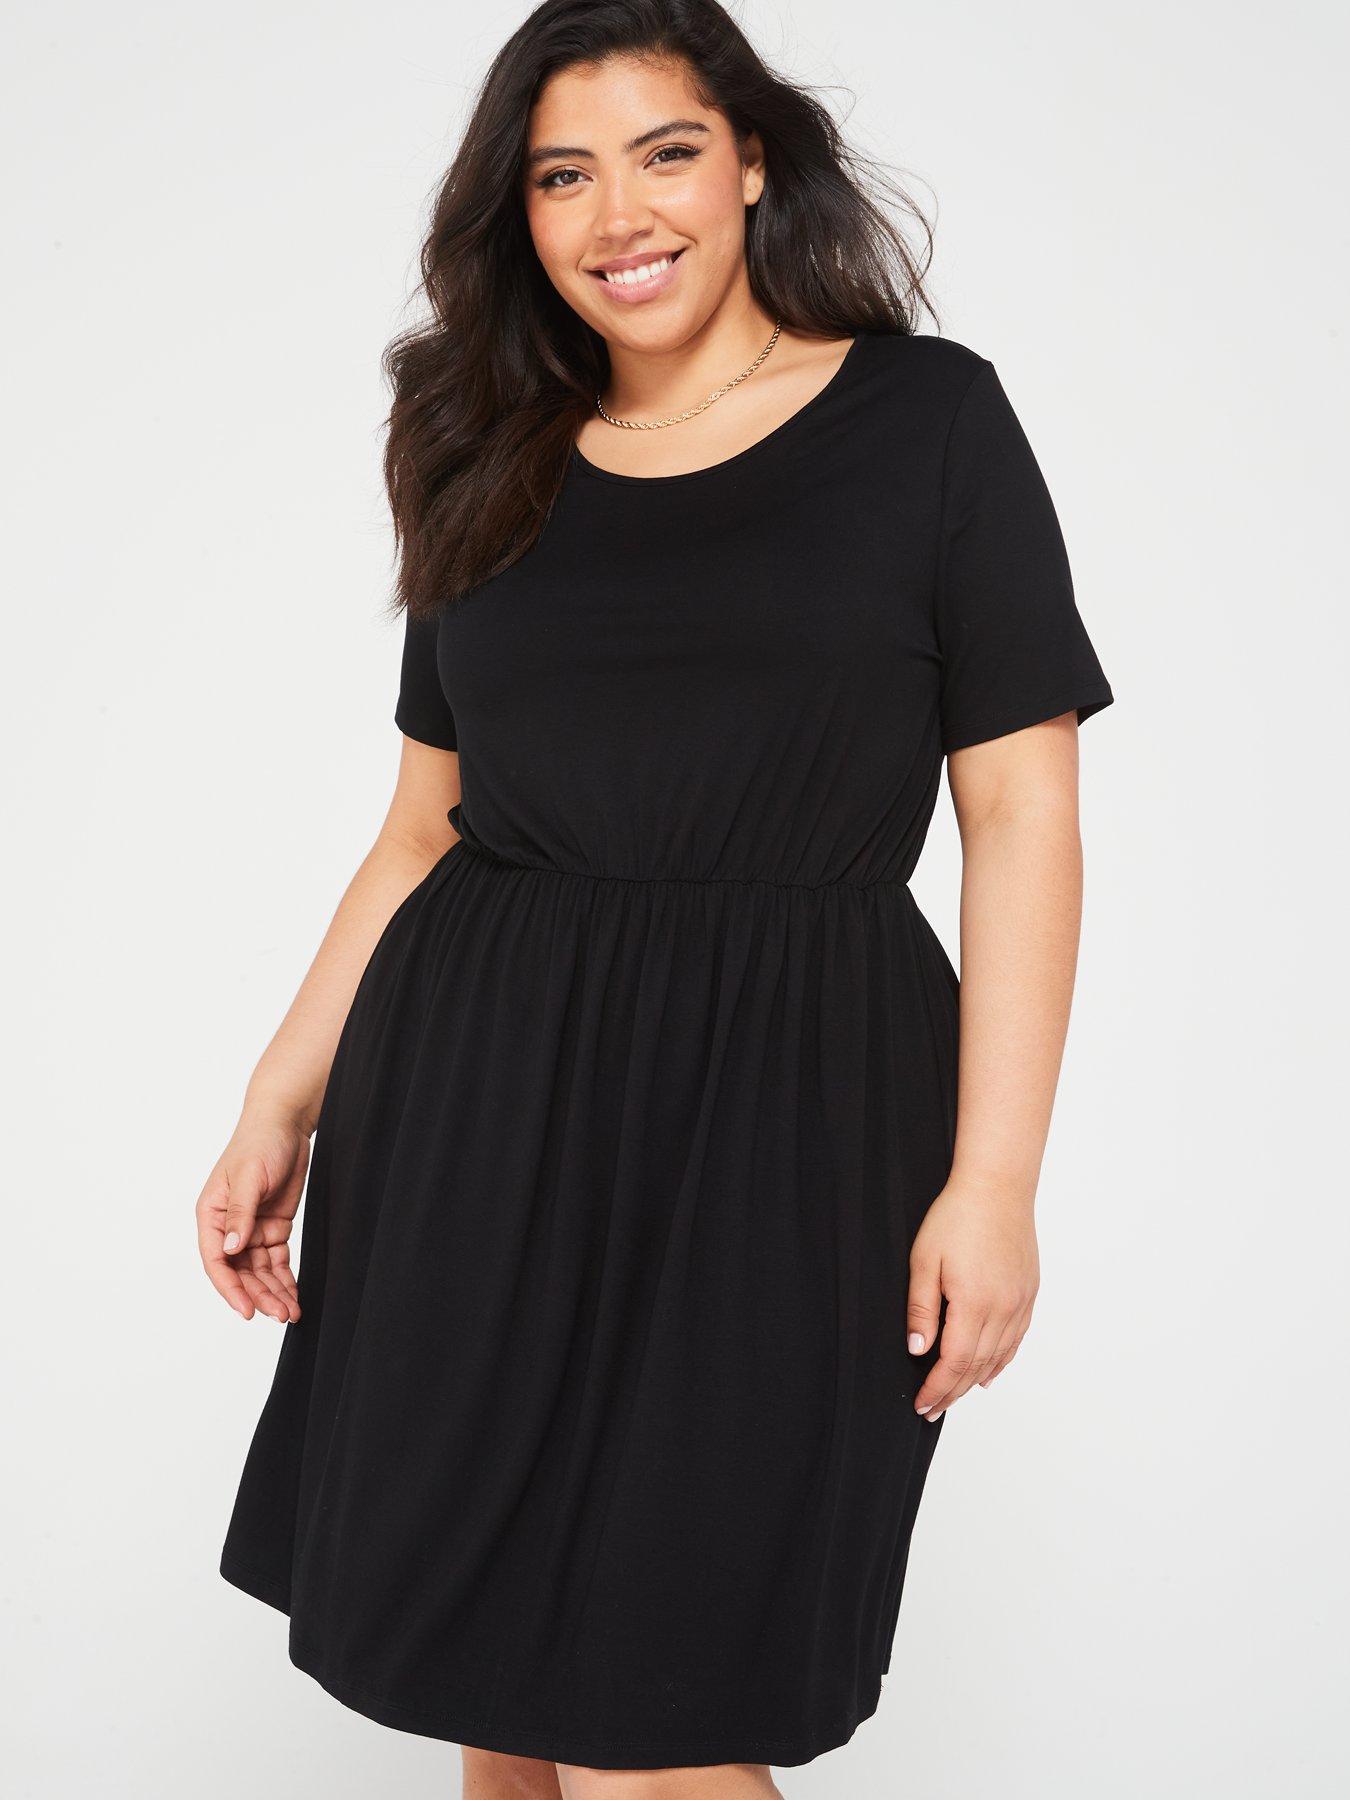 V by Very Curve Jersey Short Sleeve Mini Dress - Black | Very.co.uk